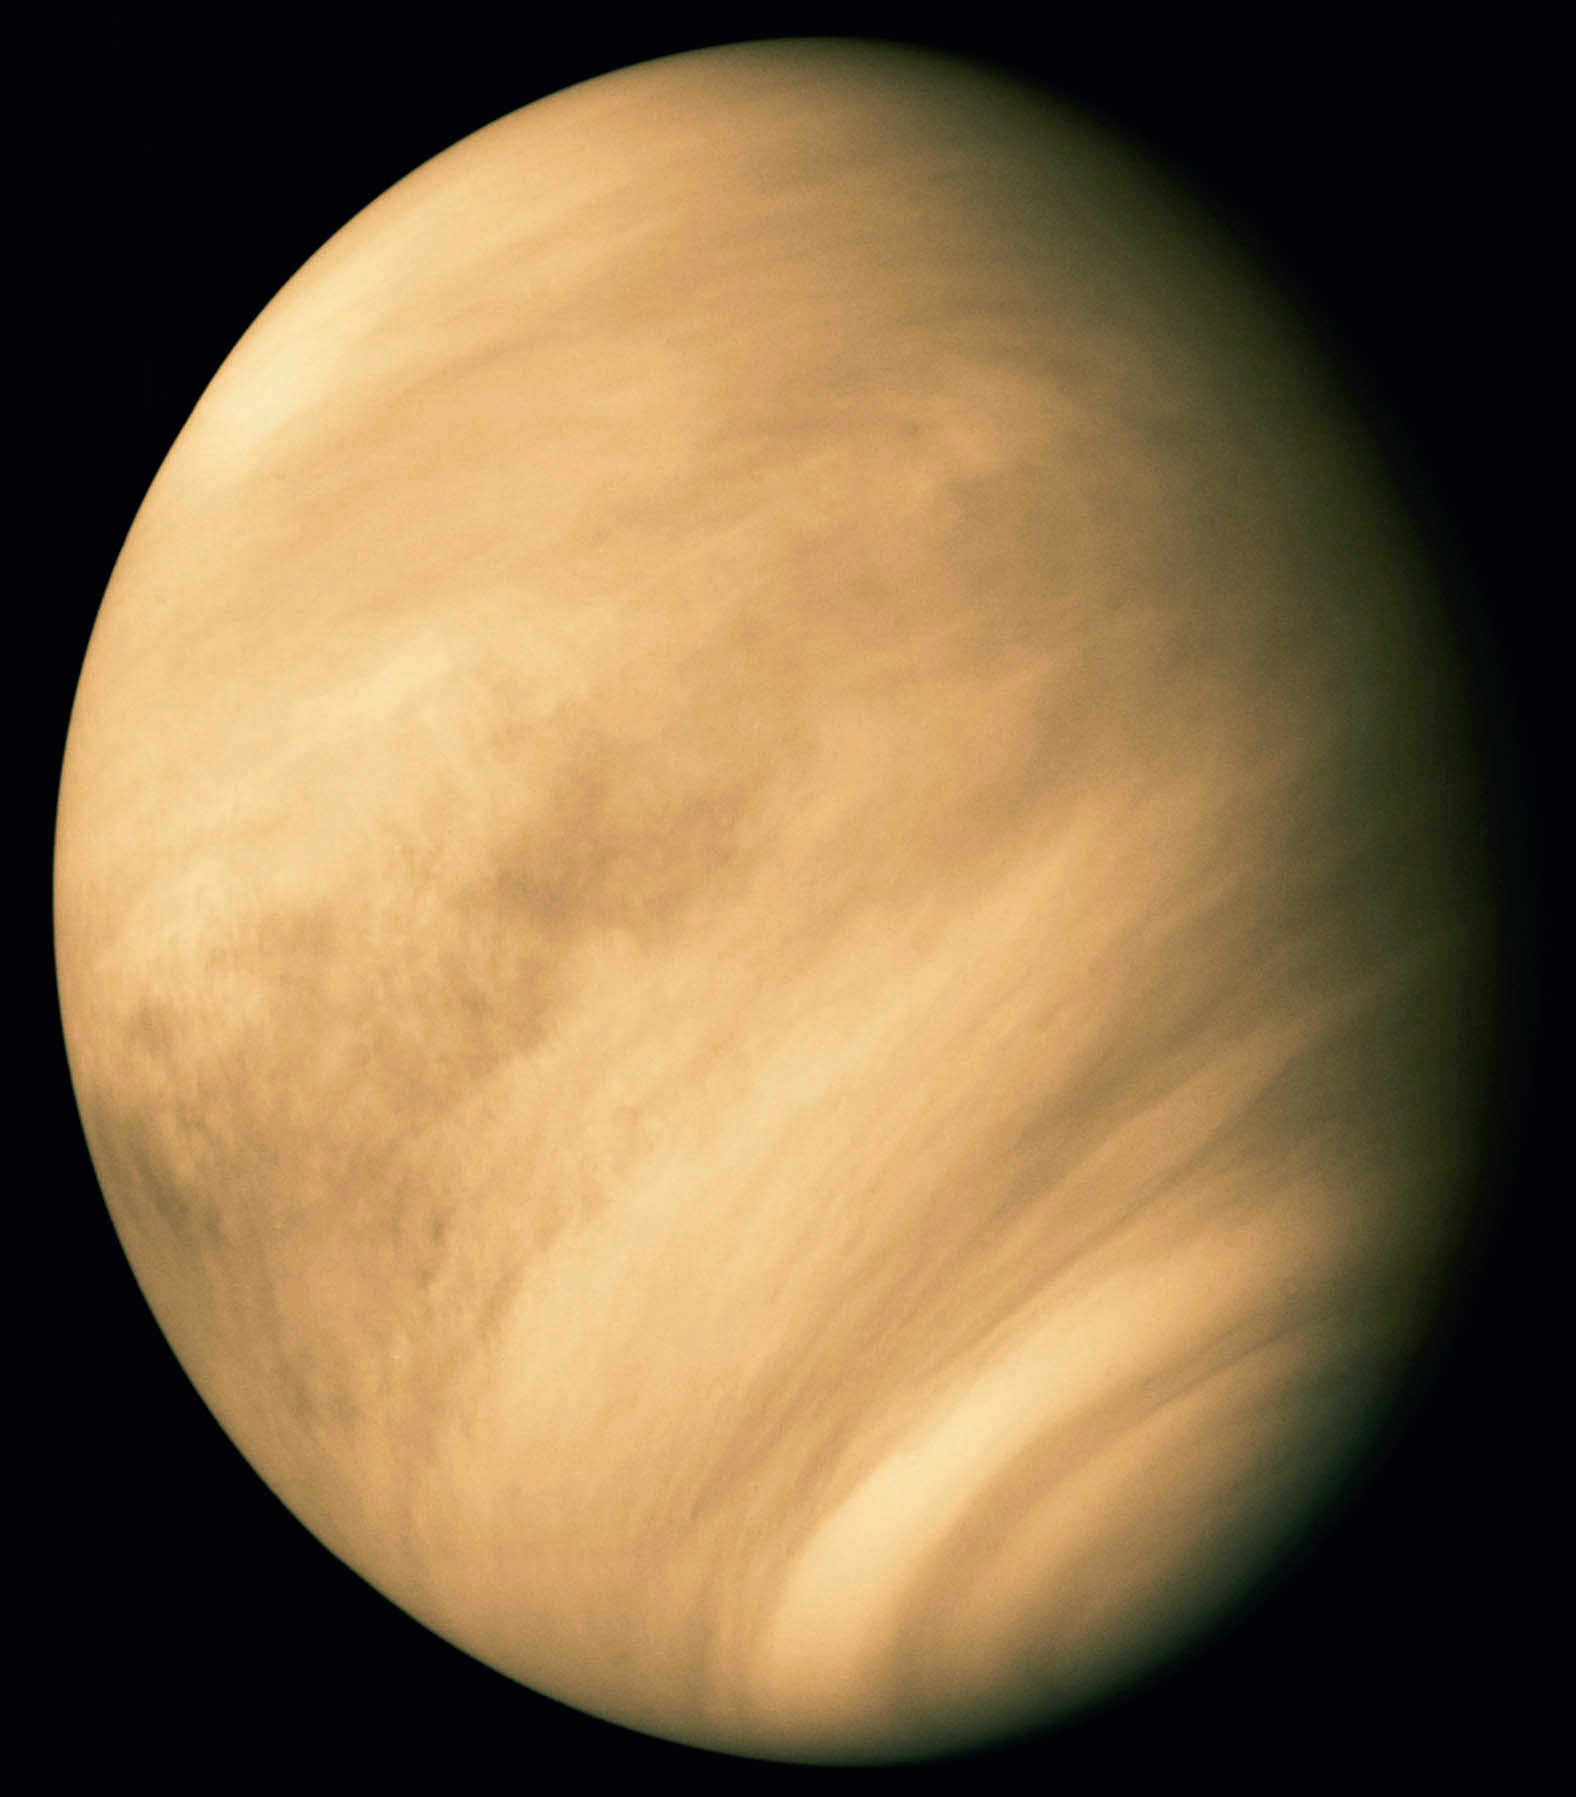 Venus im Blick
der amerikanischen Sonde
Mariner 10 im Februar
1974. Visuell sind von der
Erde aus die Wolkenstrukturen
so nicht sichtbar. Calvin J. Hamilton